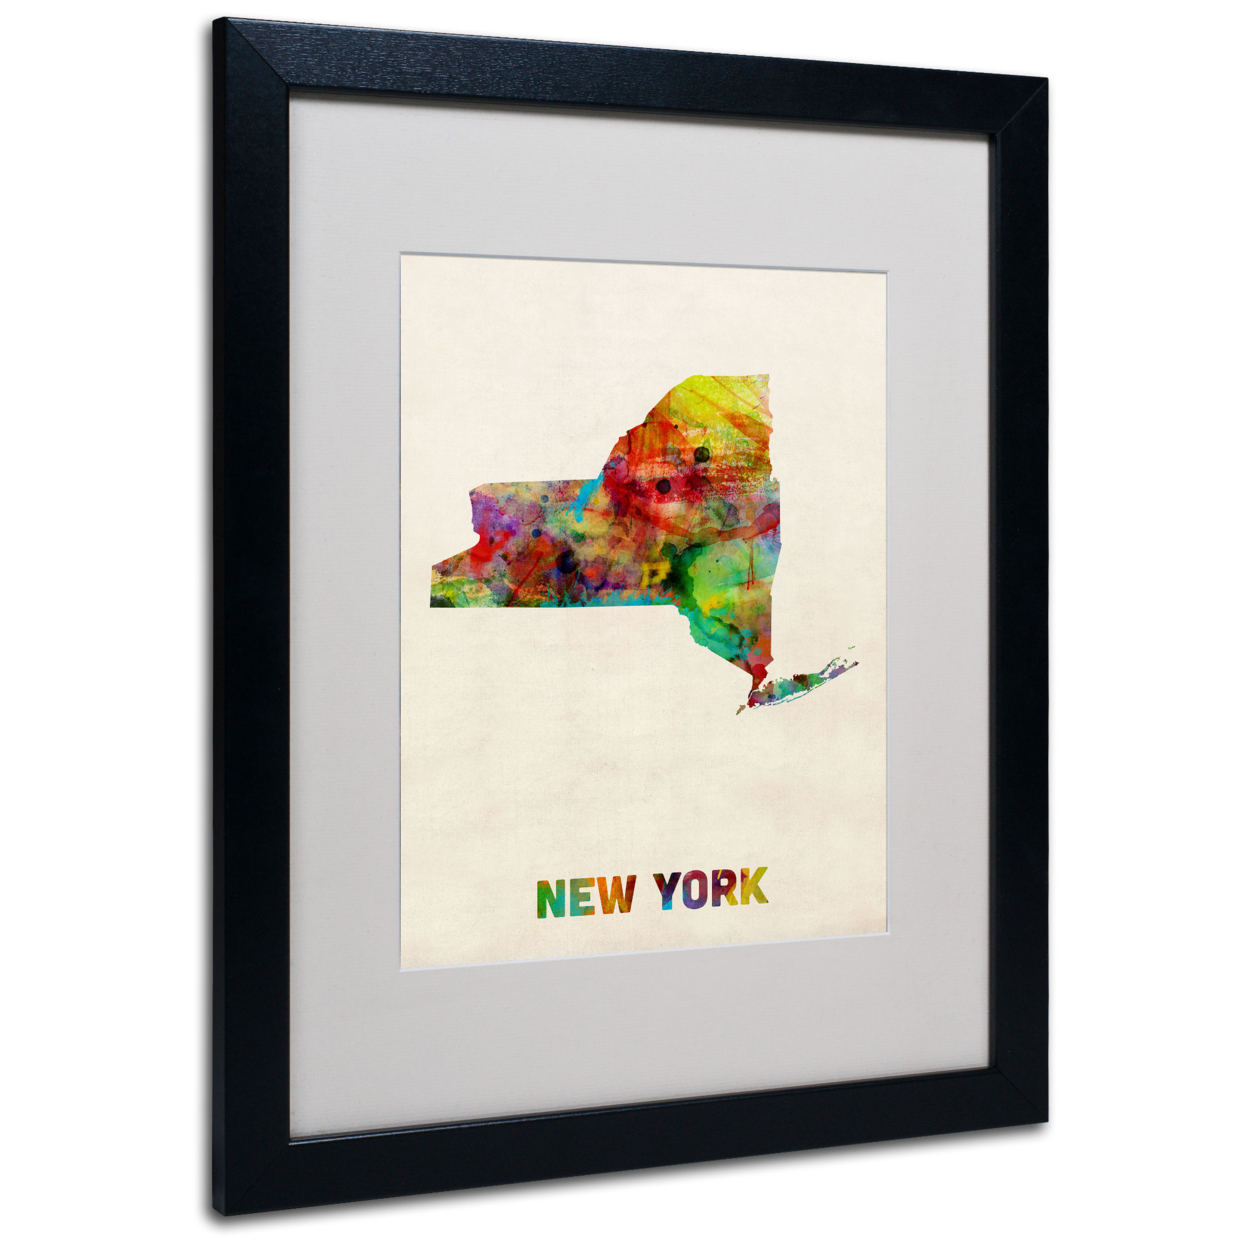 Michael Tompsett 'New York Map' Black Wooden Framed Art 18 X 22 Inches